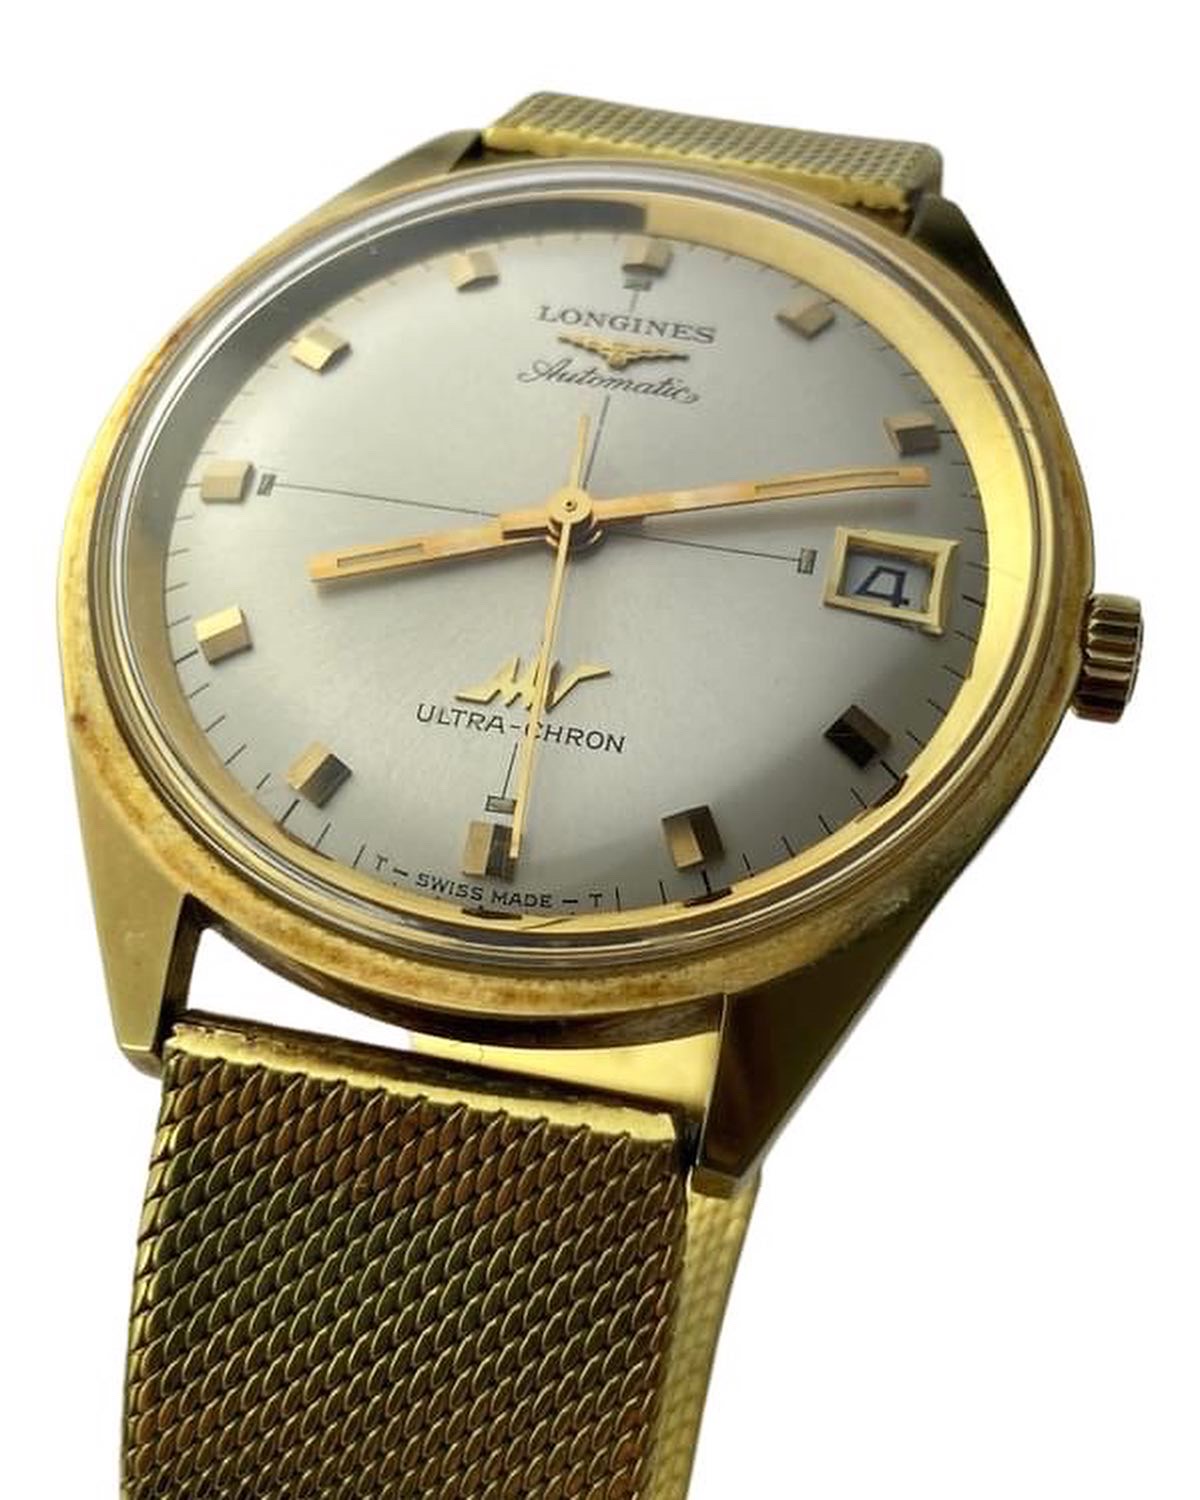 Montre-longines-ultra-chron-zrc-collector-montre-vintage1